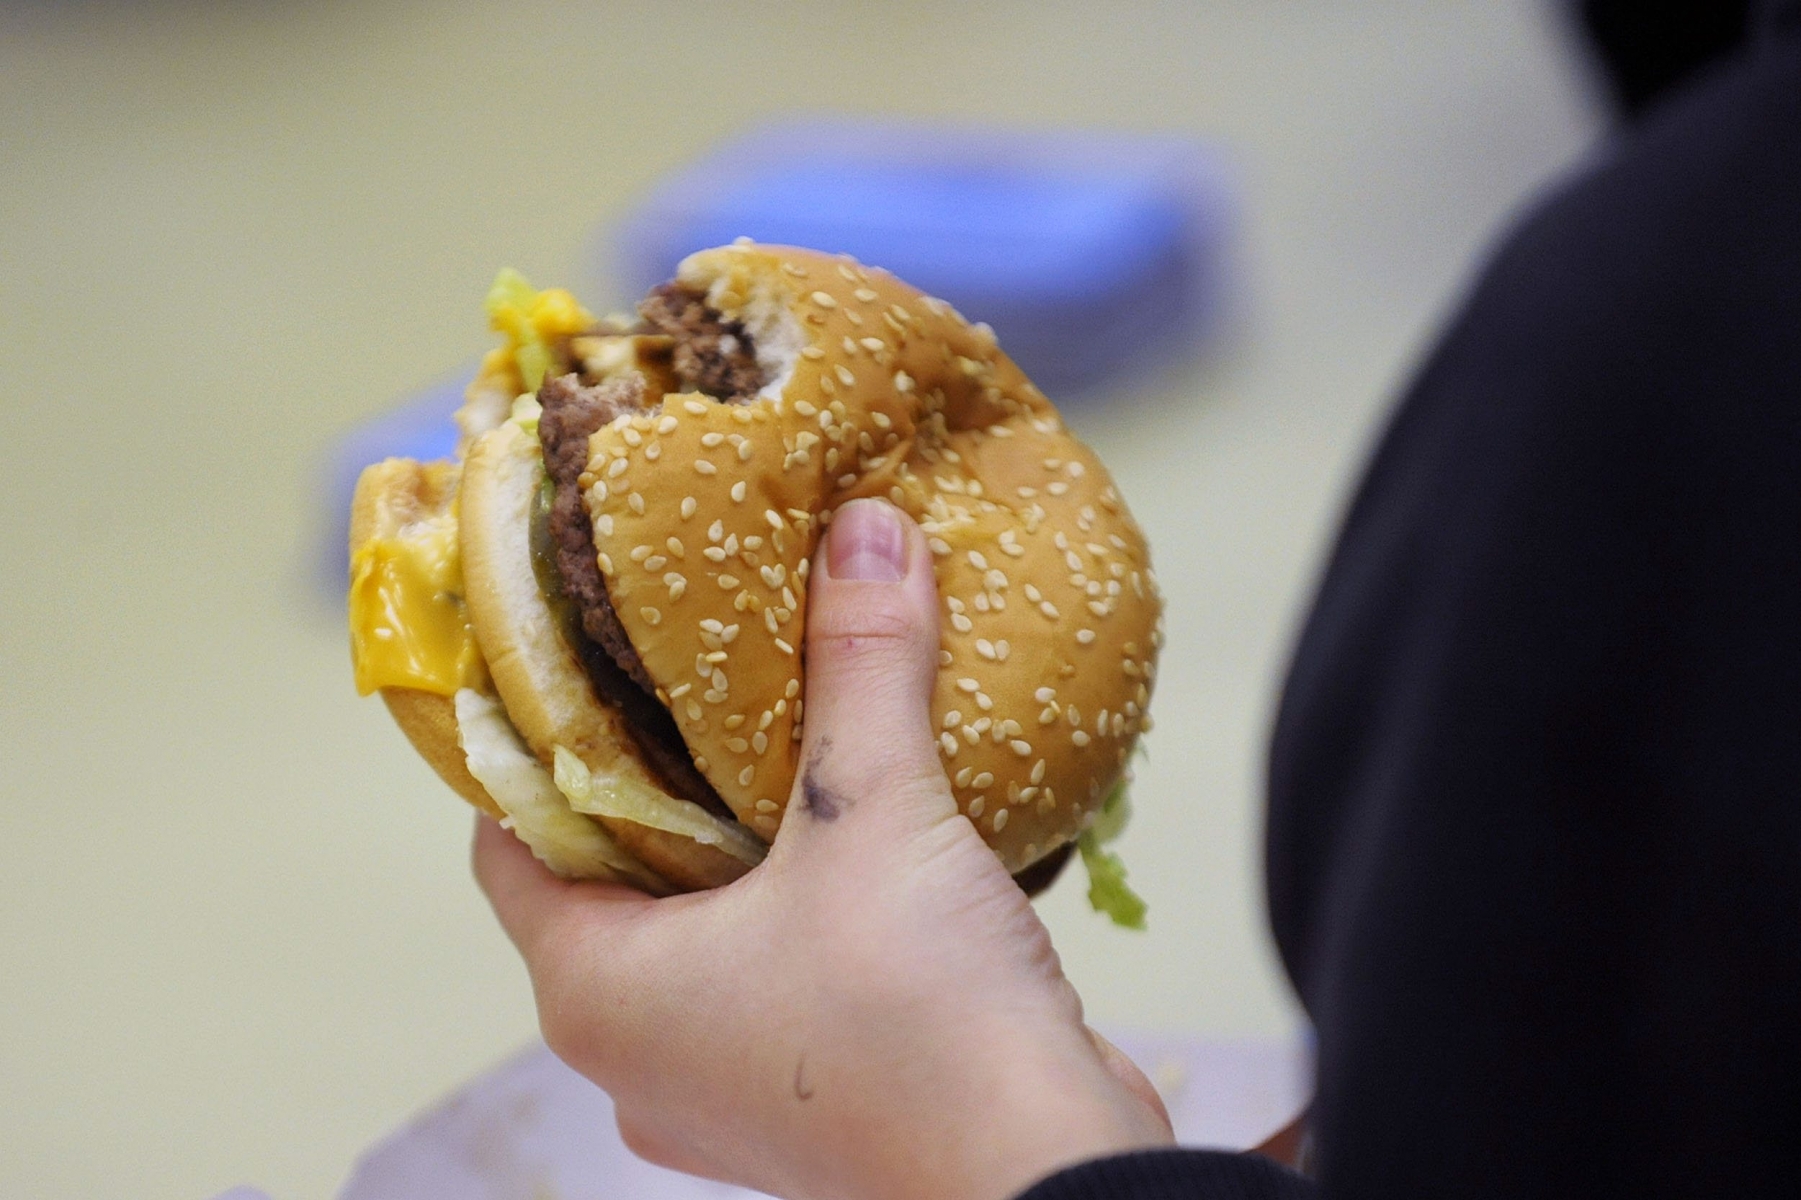 Le premier hamburger à partir de cellules souches a été créé. Cela représente une véritable révolution dans l'alimentation.
